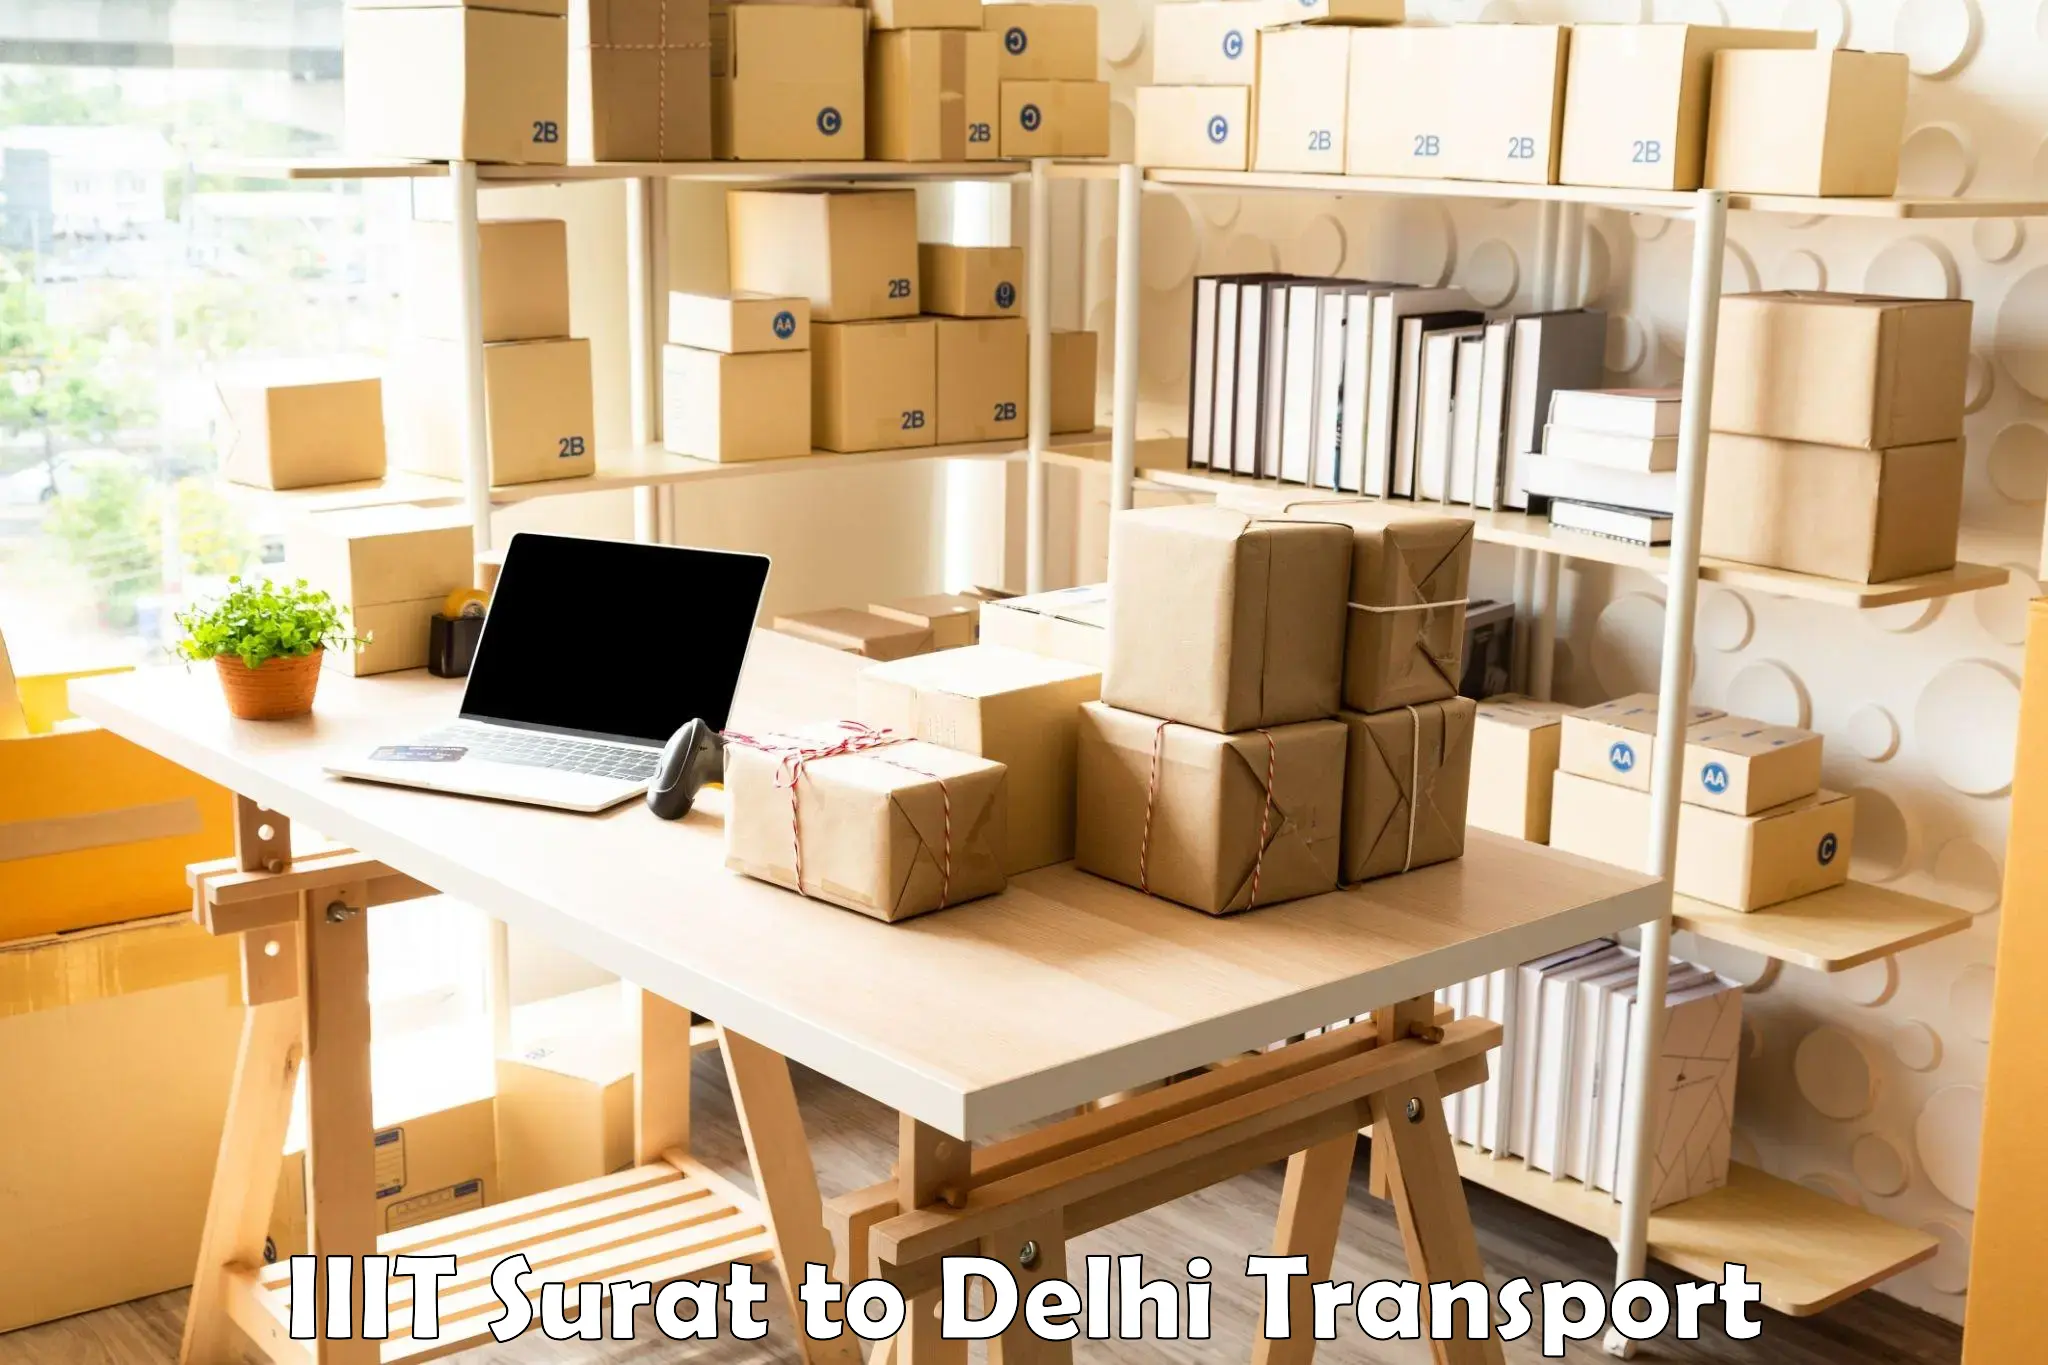 Commercial transport service IIIT Surat to East Delhi